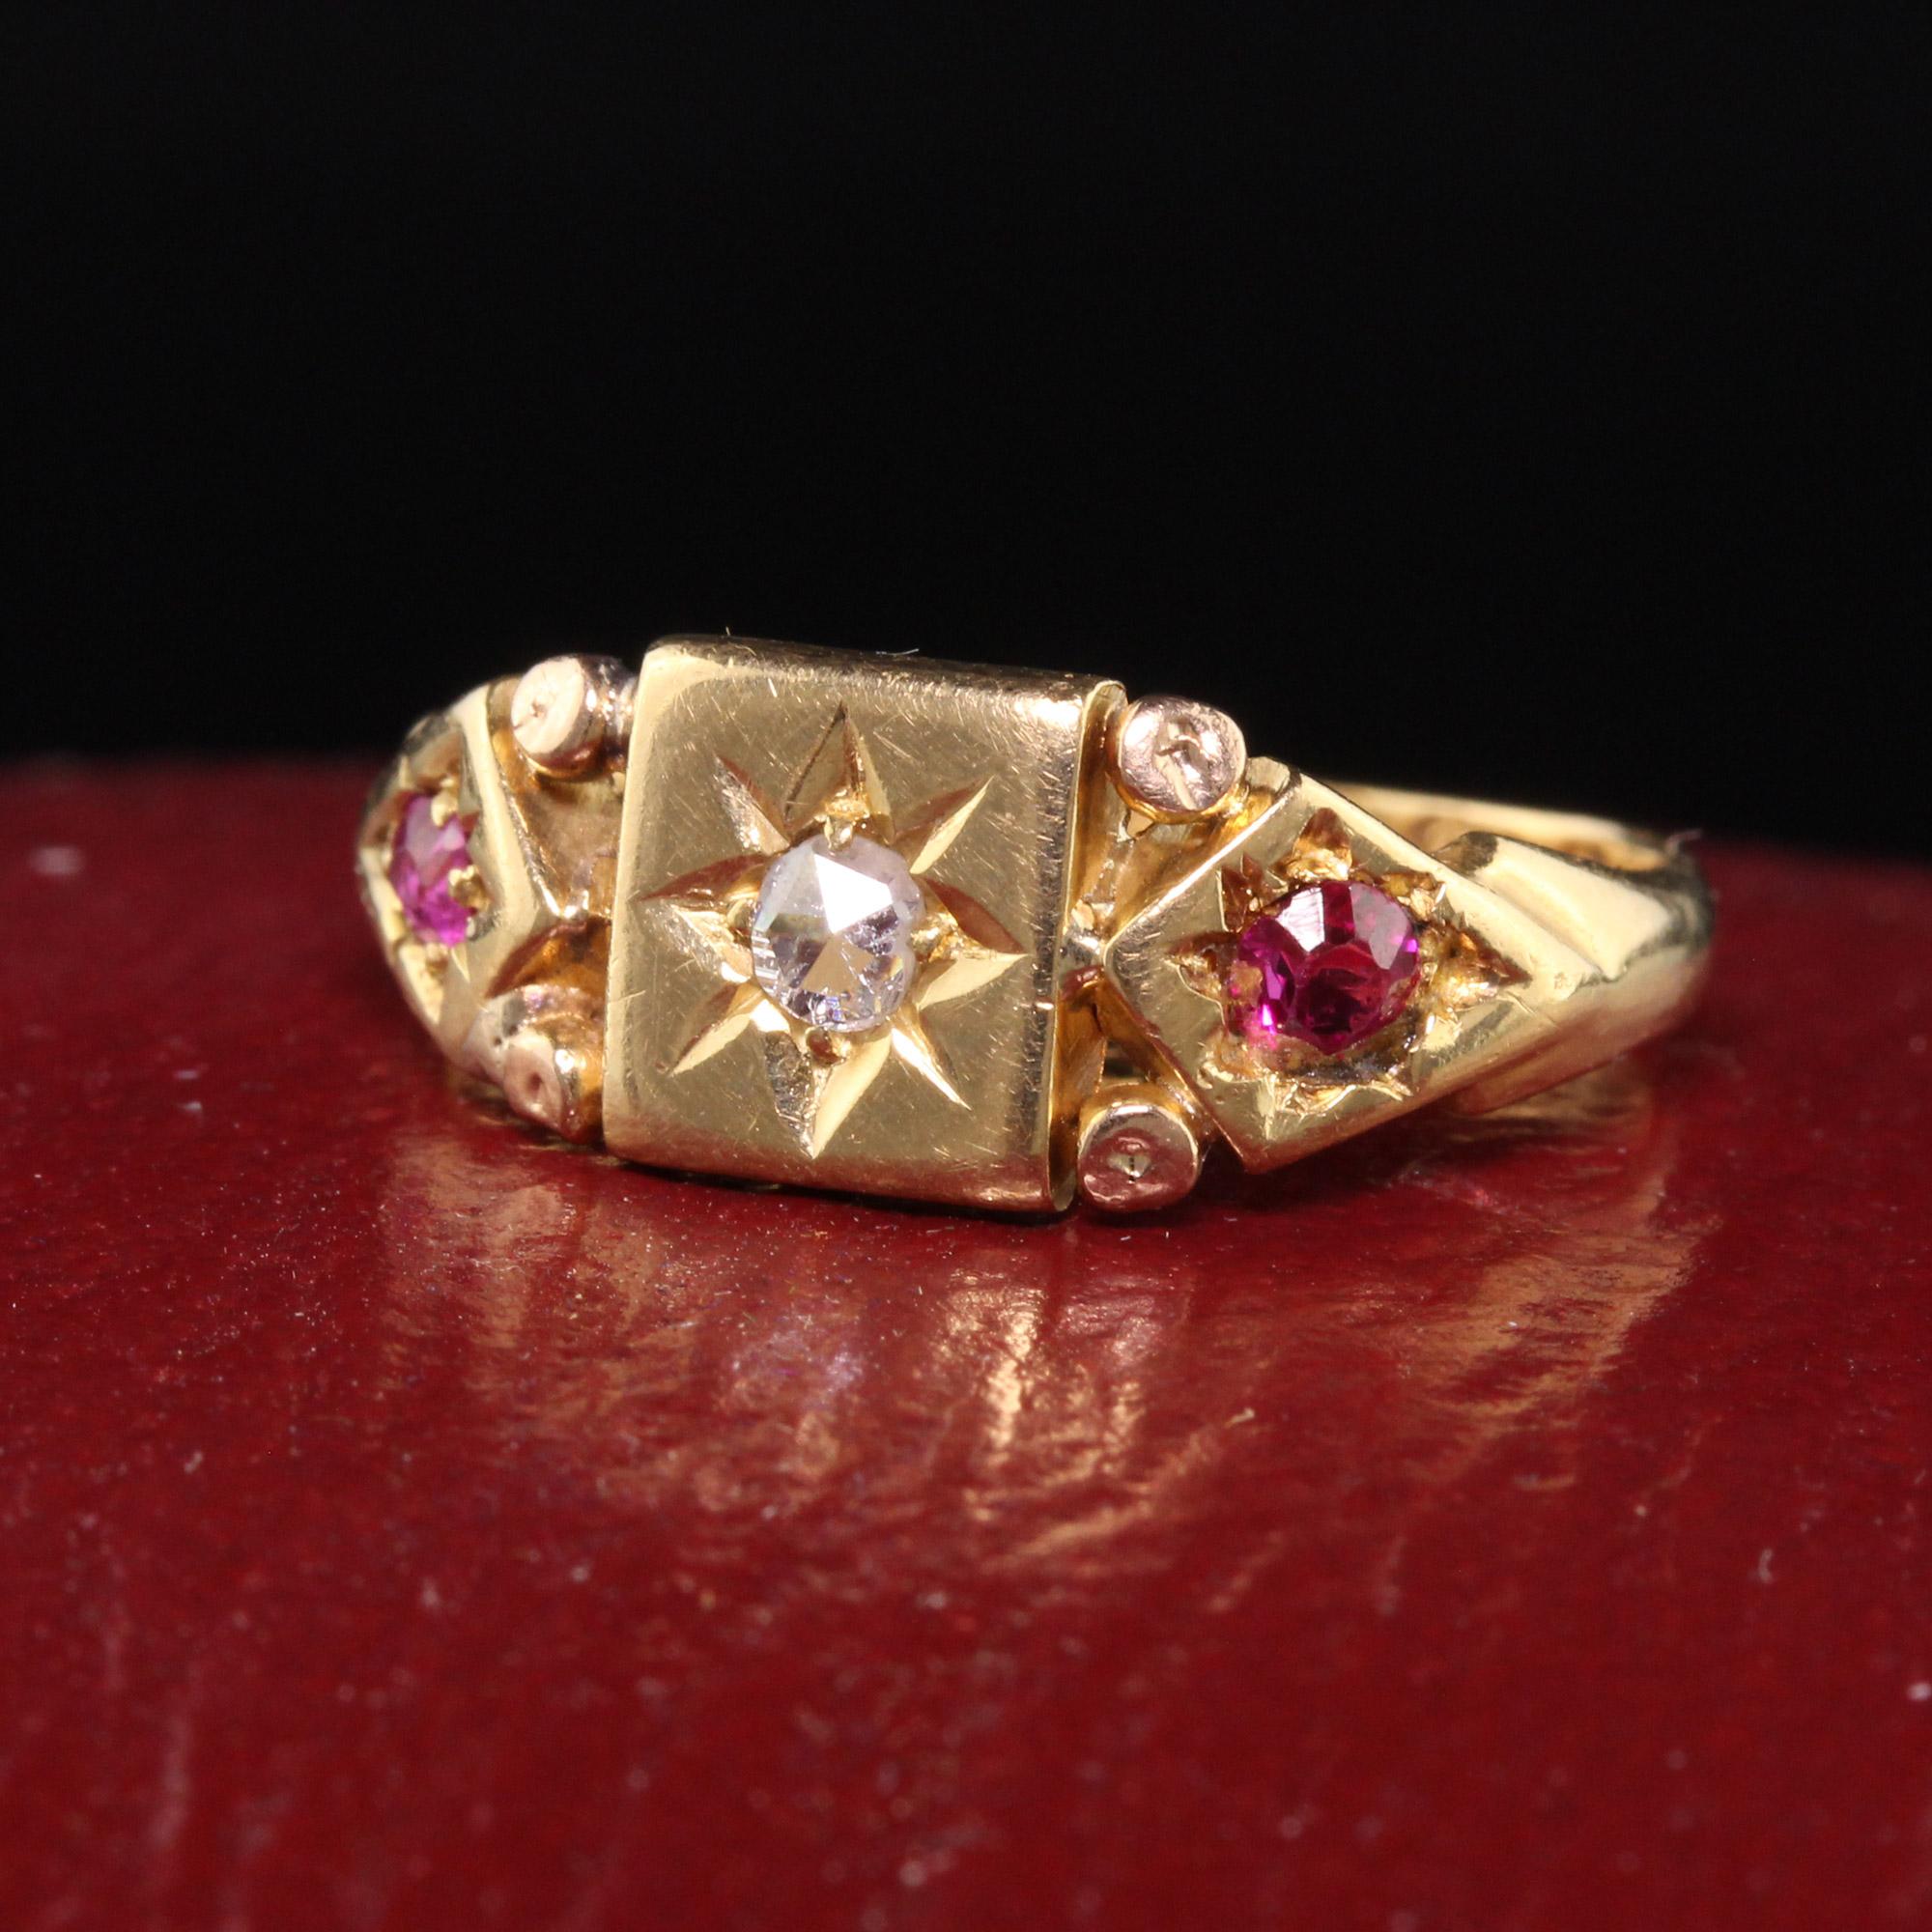 Schöne antike viktorianische Englisch 18K Gelbgold Rose Cut Diamant und Rubin Ring. Dieser schöne viktorianische Ring ist in 18K Gelbgold gefertigt und wird in England hergestellt. Es ist ein Diamant im Rosenschliff in der Mitte mit 2 natürlichen